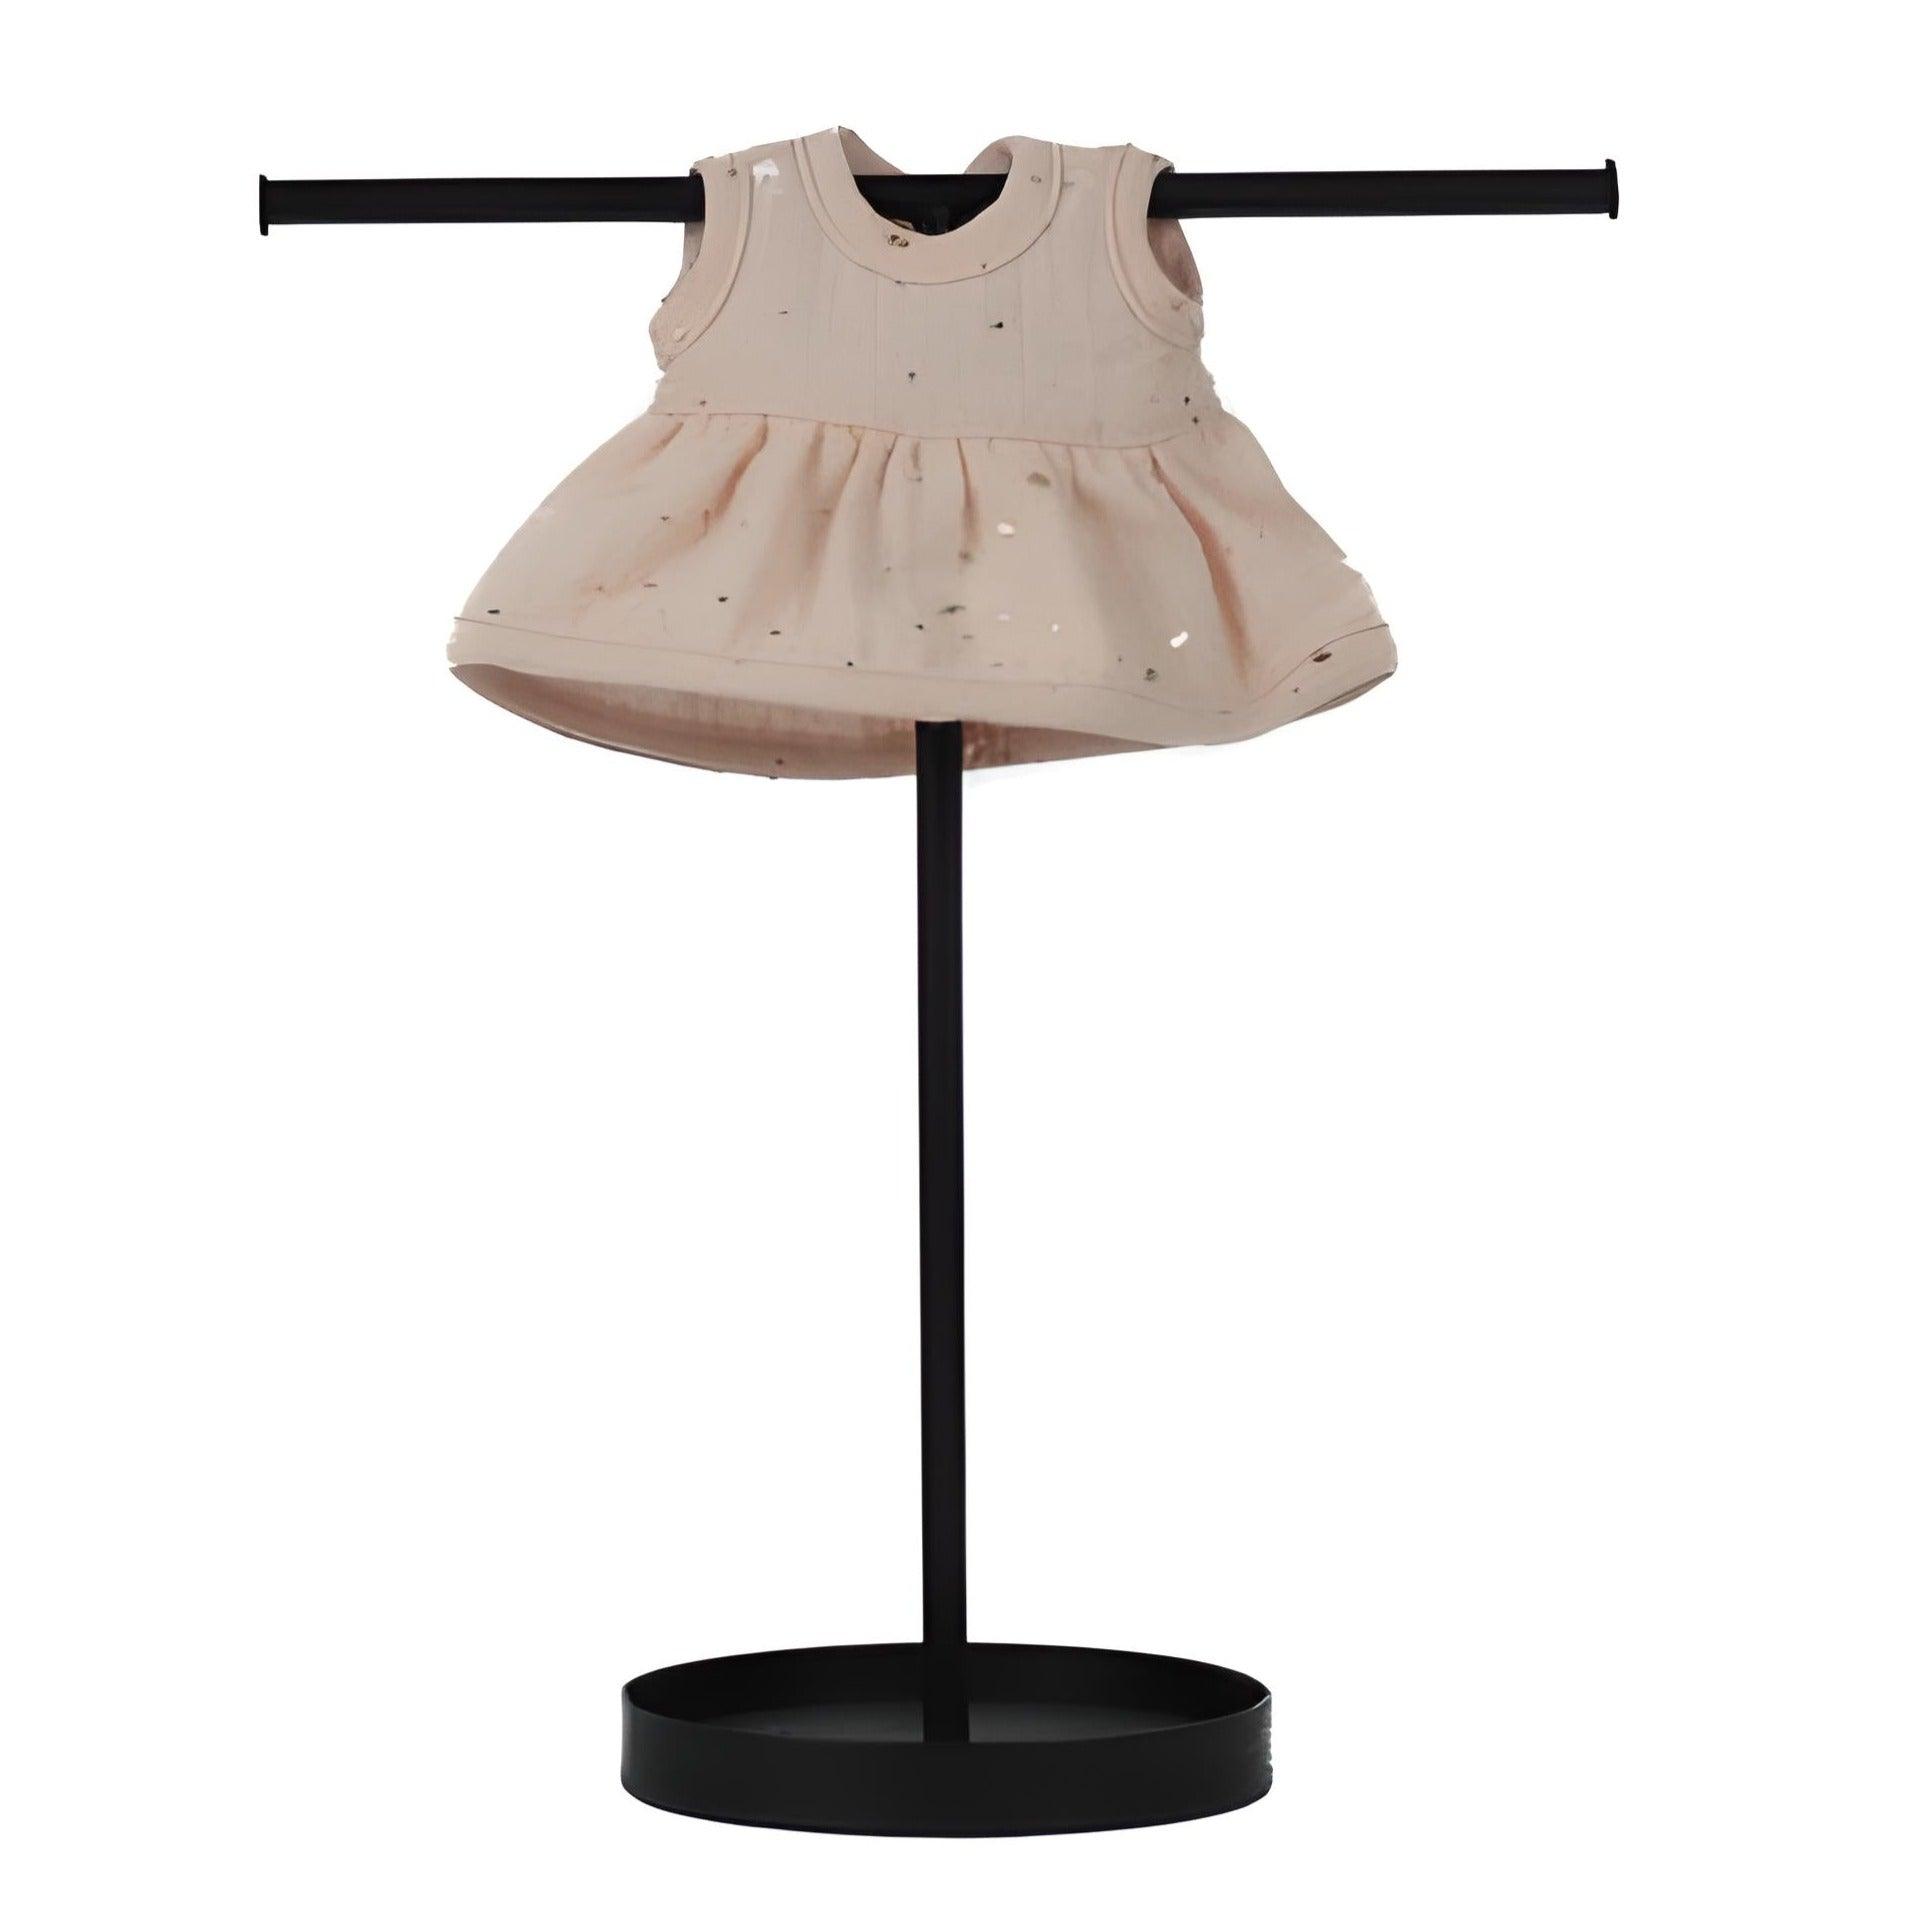 Lillitoy: Gold Punkte Musselin Kleid für Miniland 21 cm Puppe